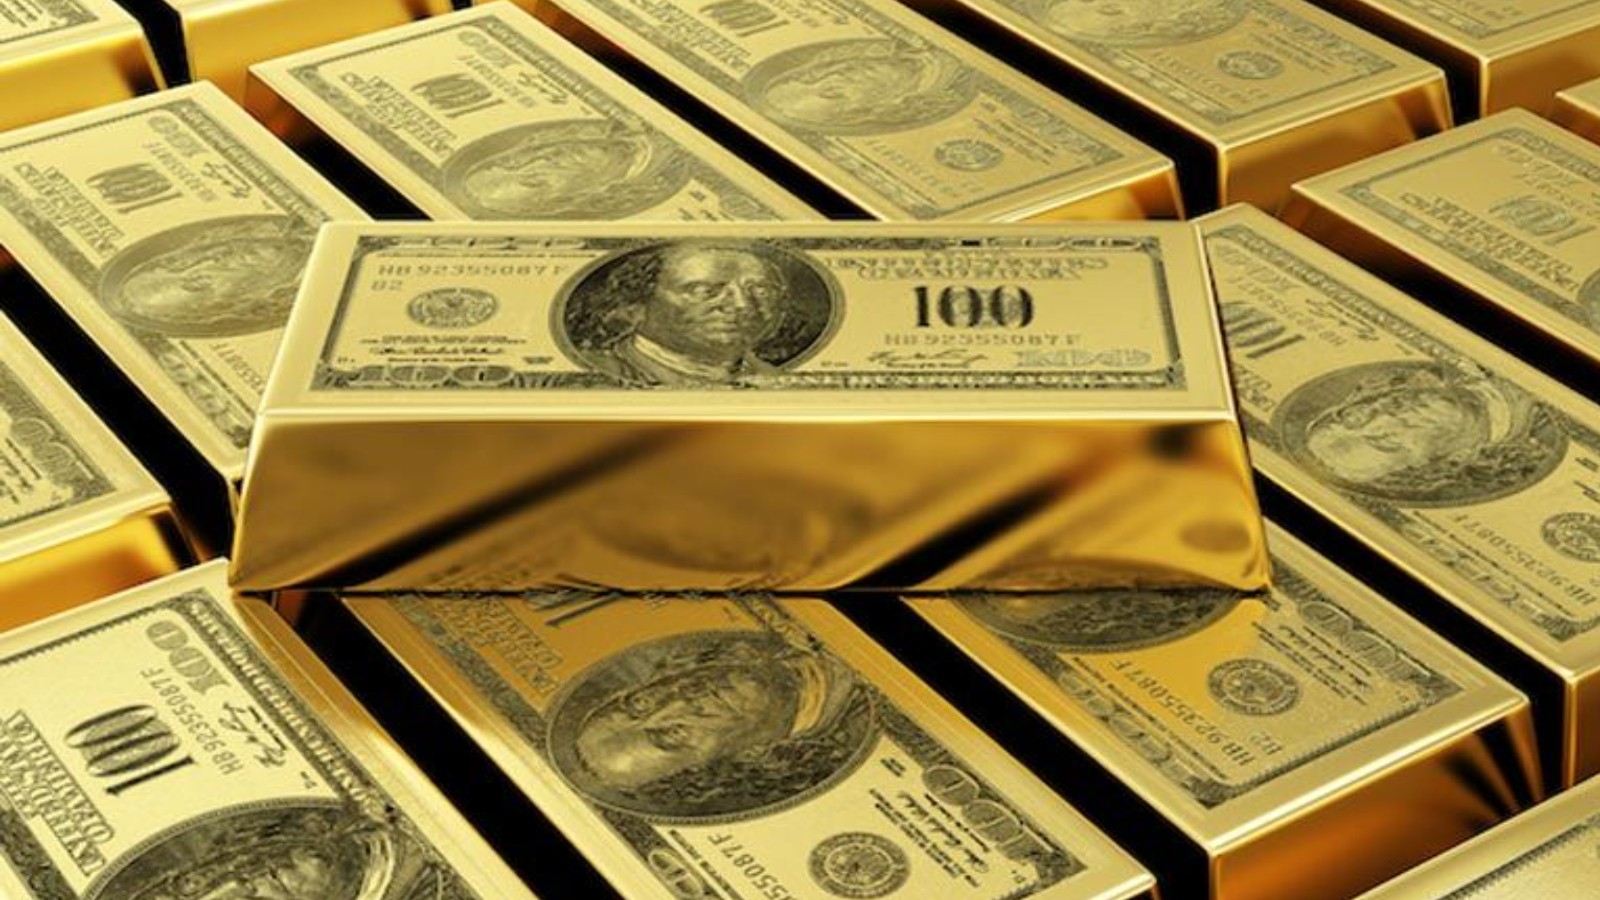 ทองคำลดลงต่อเนื่อง ร่วงใกล้ระดับต่ำสุดในรอบ 3 เดือน หลังดอลลาร์พุ่งสูงขึ้นเป็นประวัติการณ์